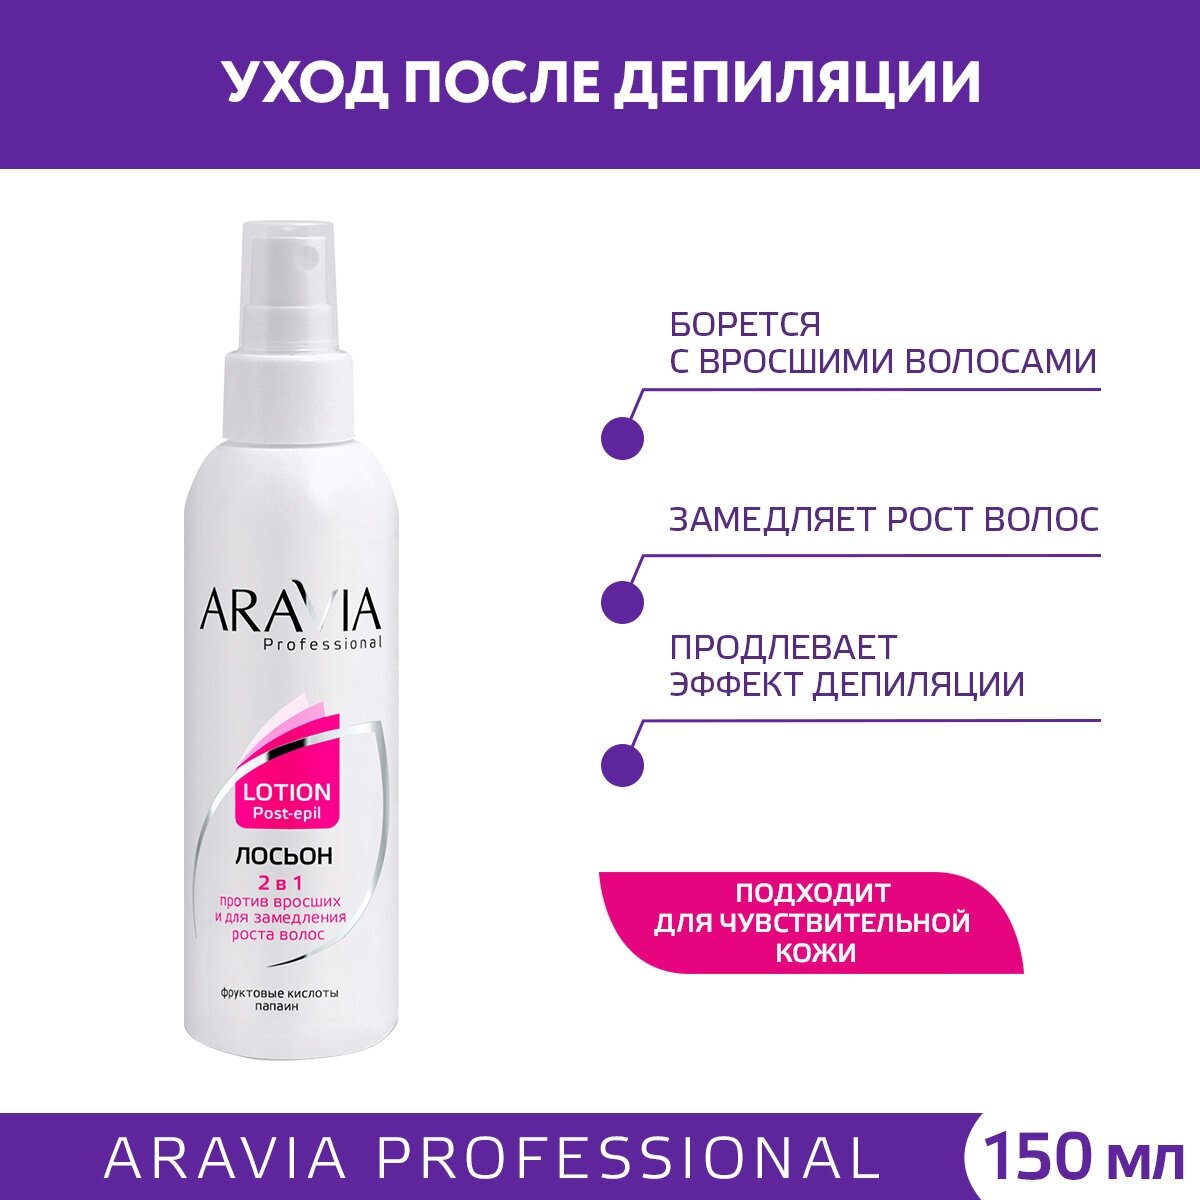 Aravia professional Лосьон 2 в 1 от врастания и для замедления роста волос с фруктовыми кислотами 150 мл (Aravia professional, ) - фото №3